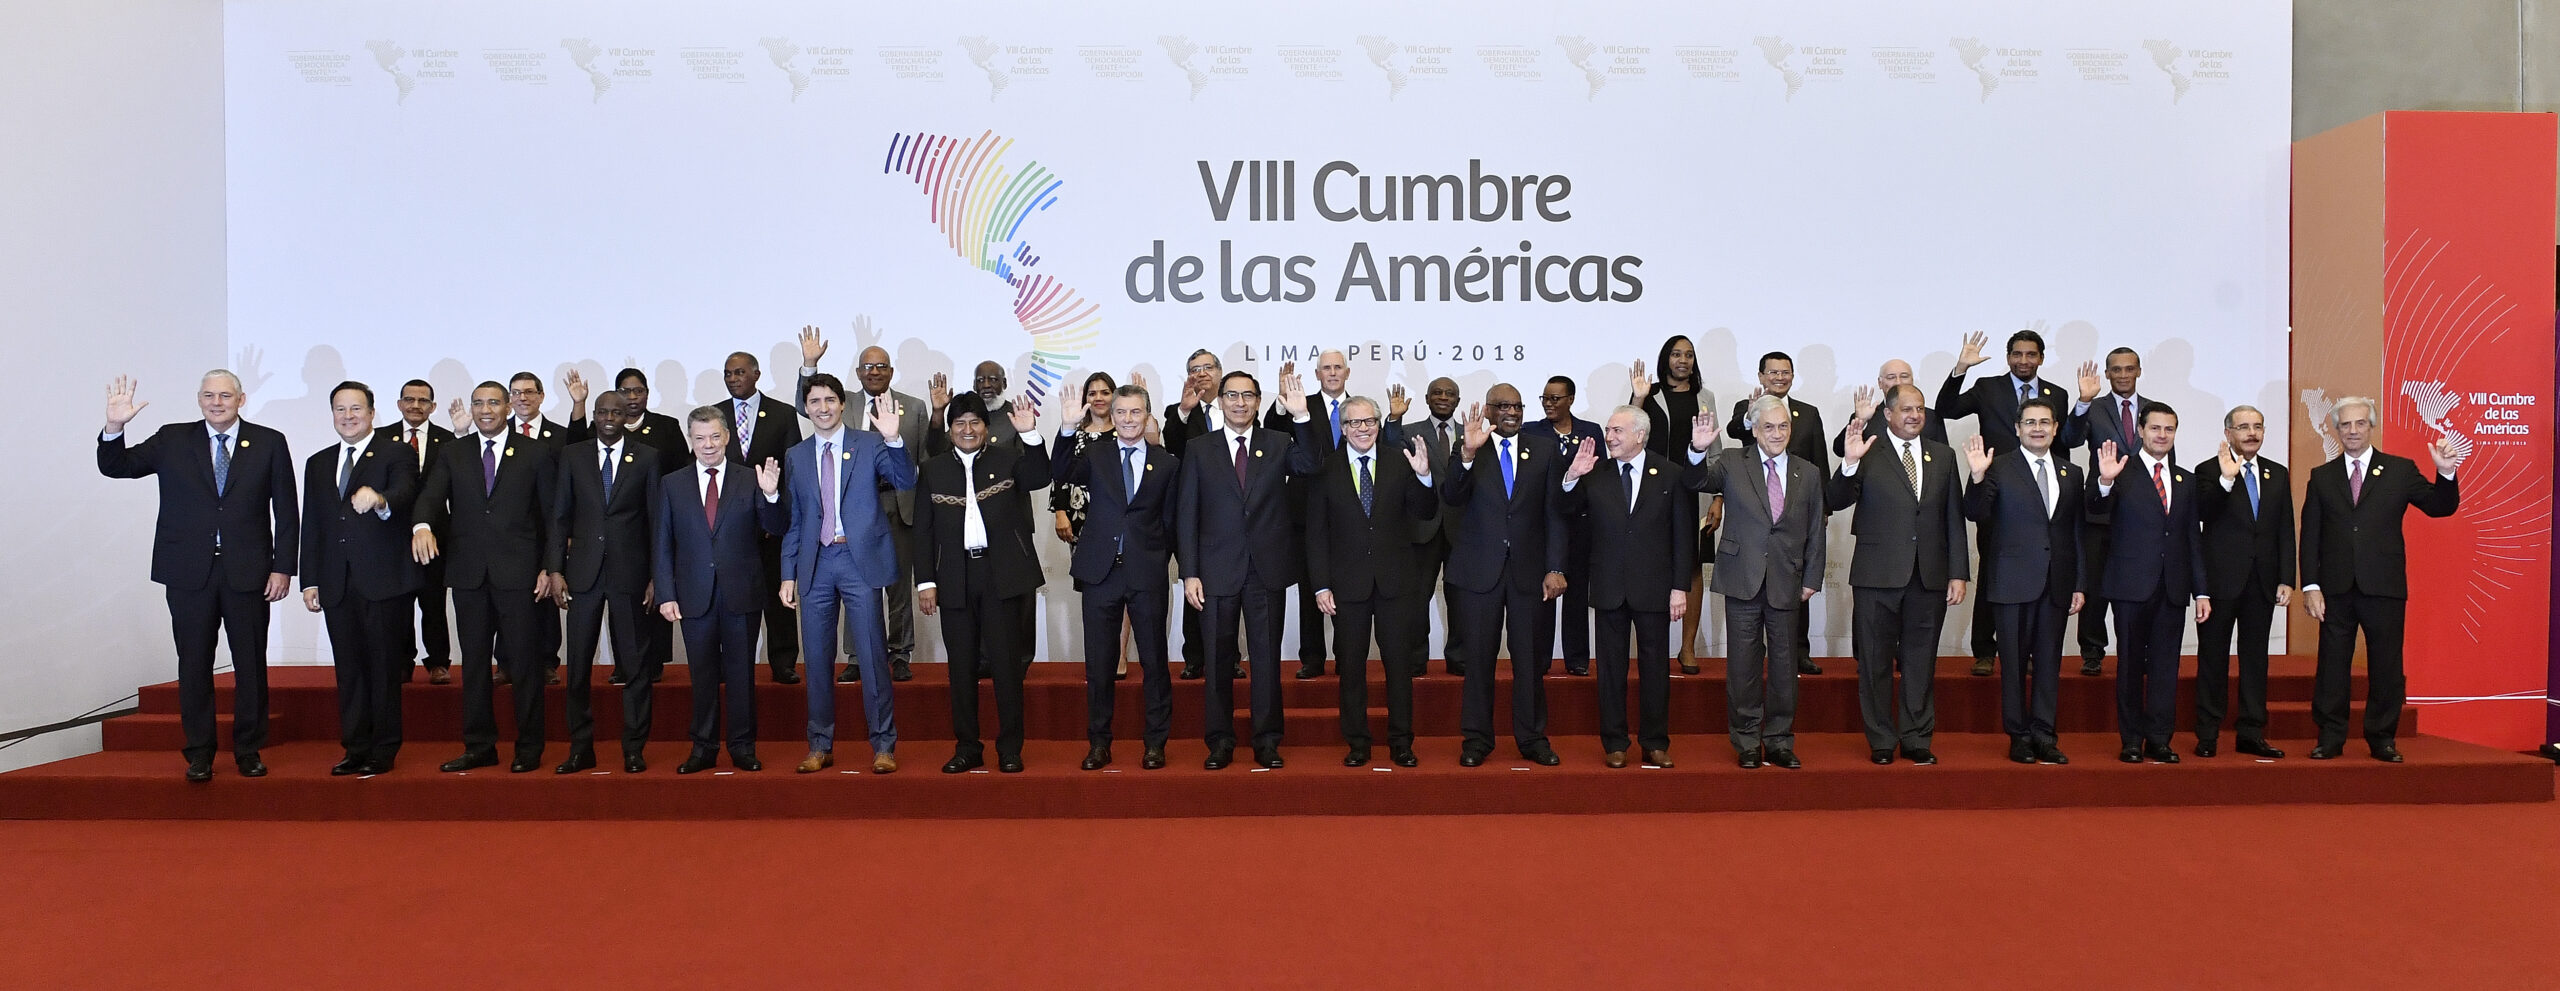 Dos temas fundamentales en la Cumbre de las Américas: Migración y recuperación económica￼